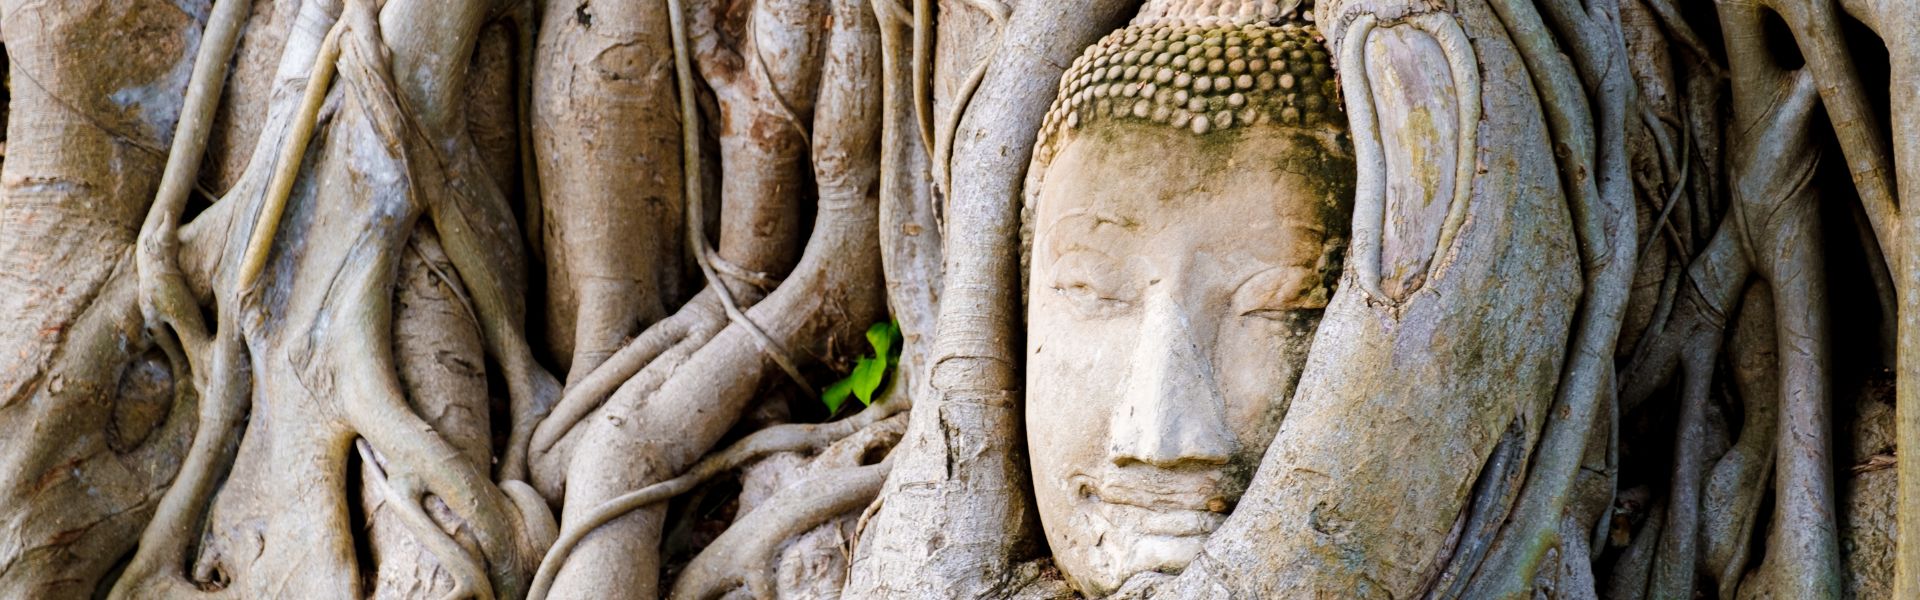 Ayutthaya - Consejos de viaje | Guía de viajes a Tailandia